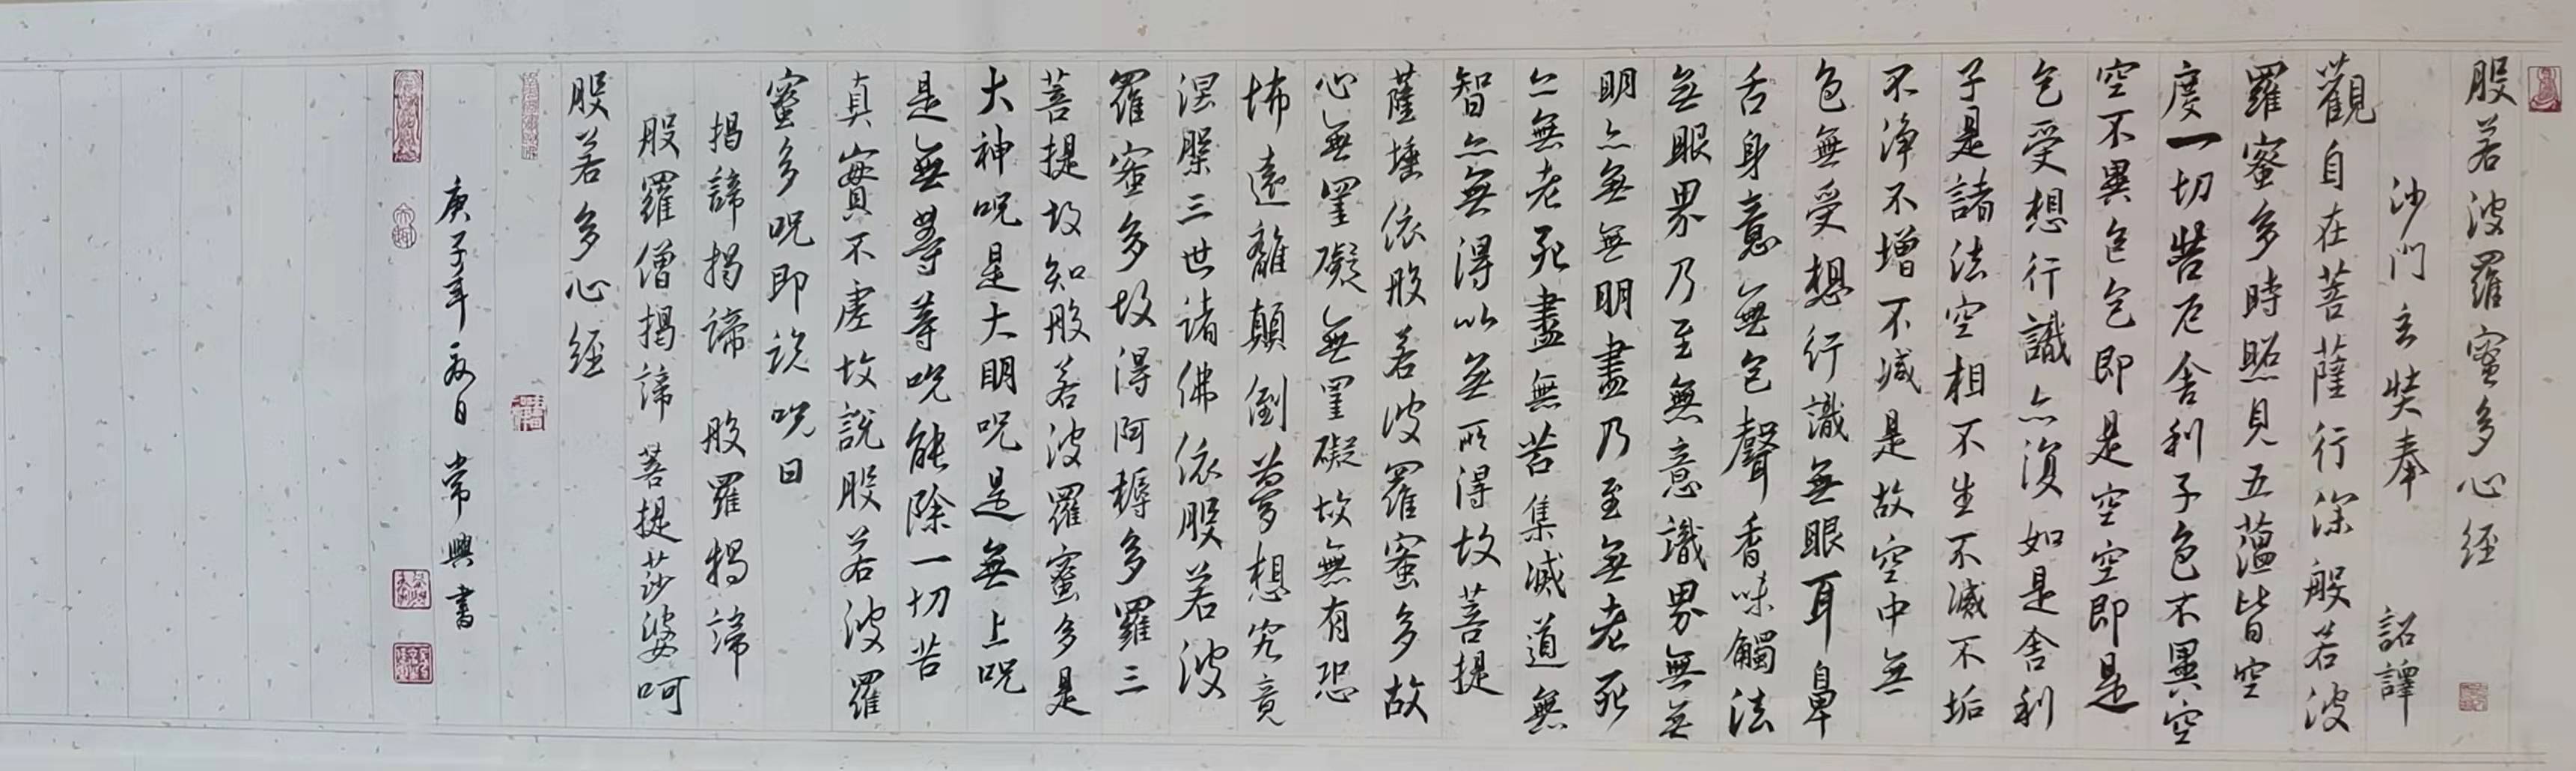 中国大众文化学会名人书画艺术发展委员会——张京生